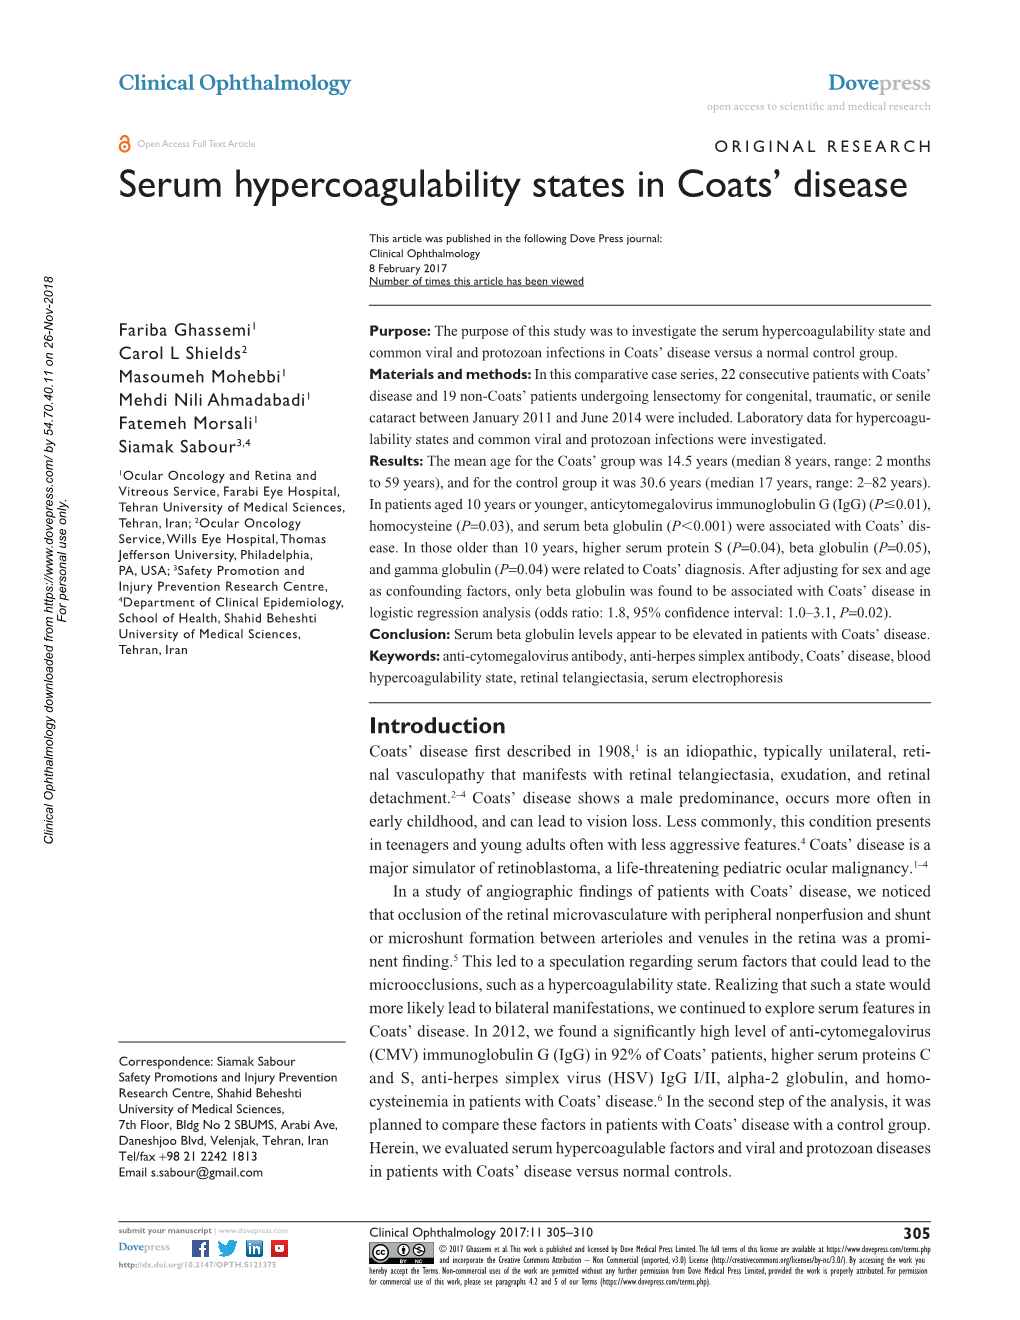 Serum Hypercoagulability States in Coats' Disease